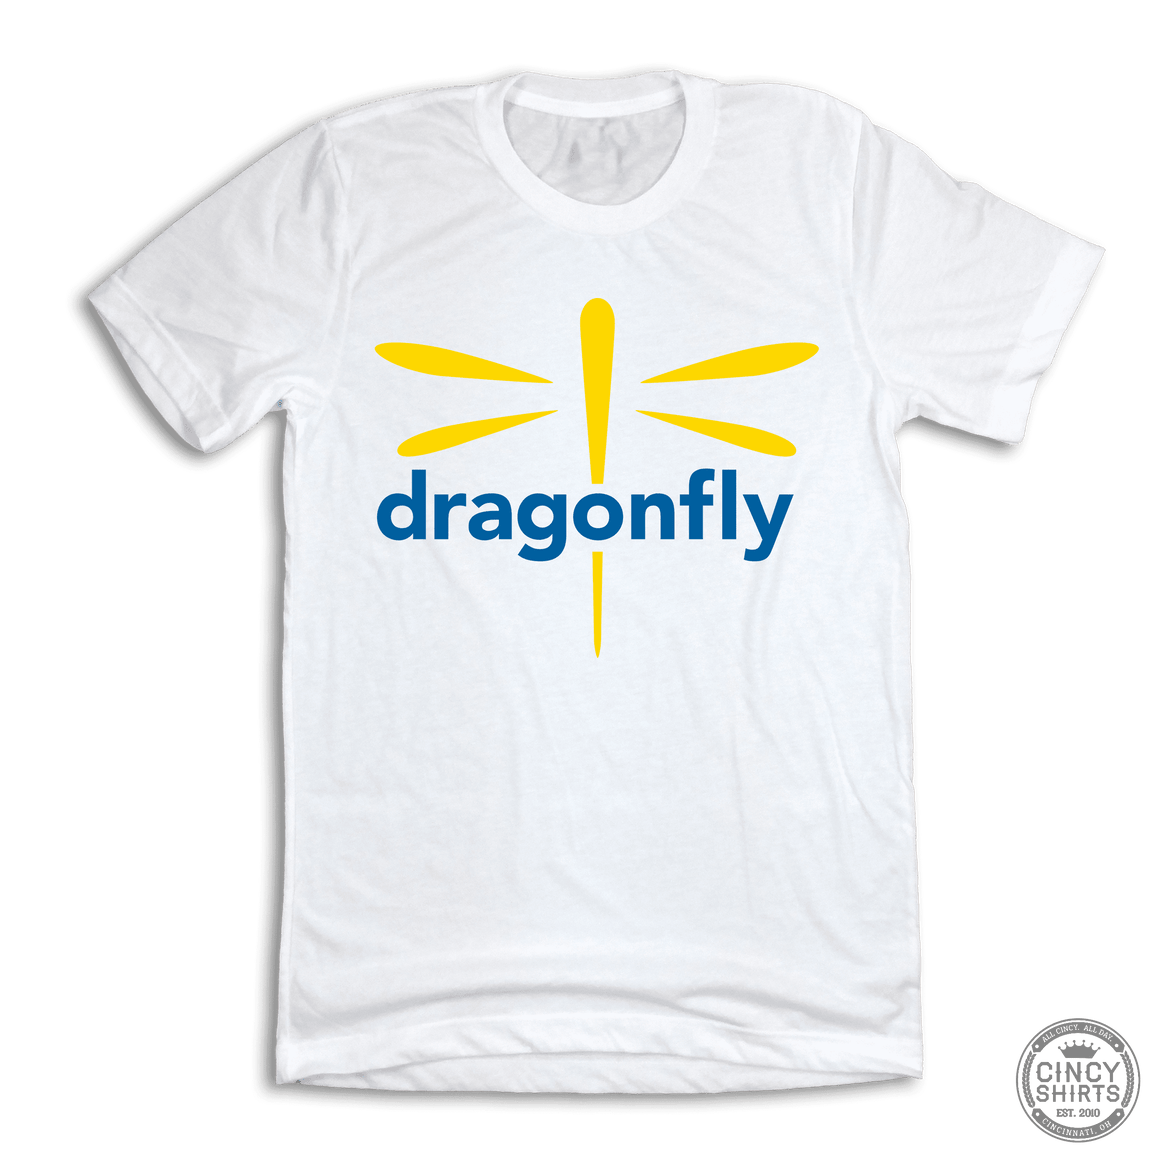 Dragonfly Foundation Logo - Cincy Shirts